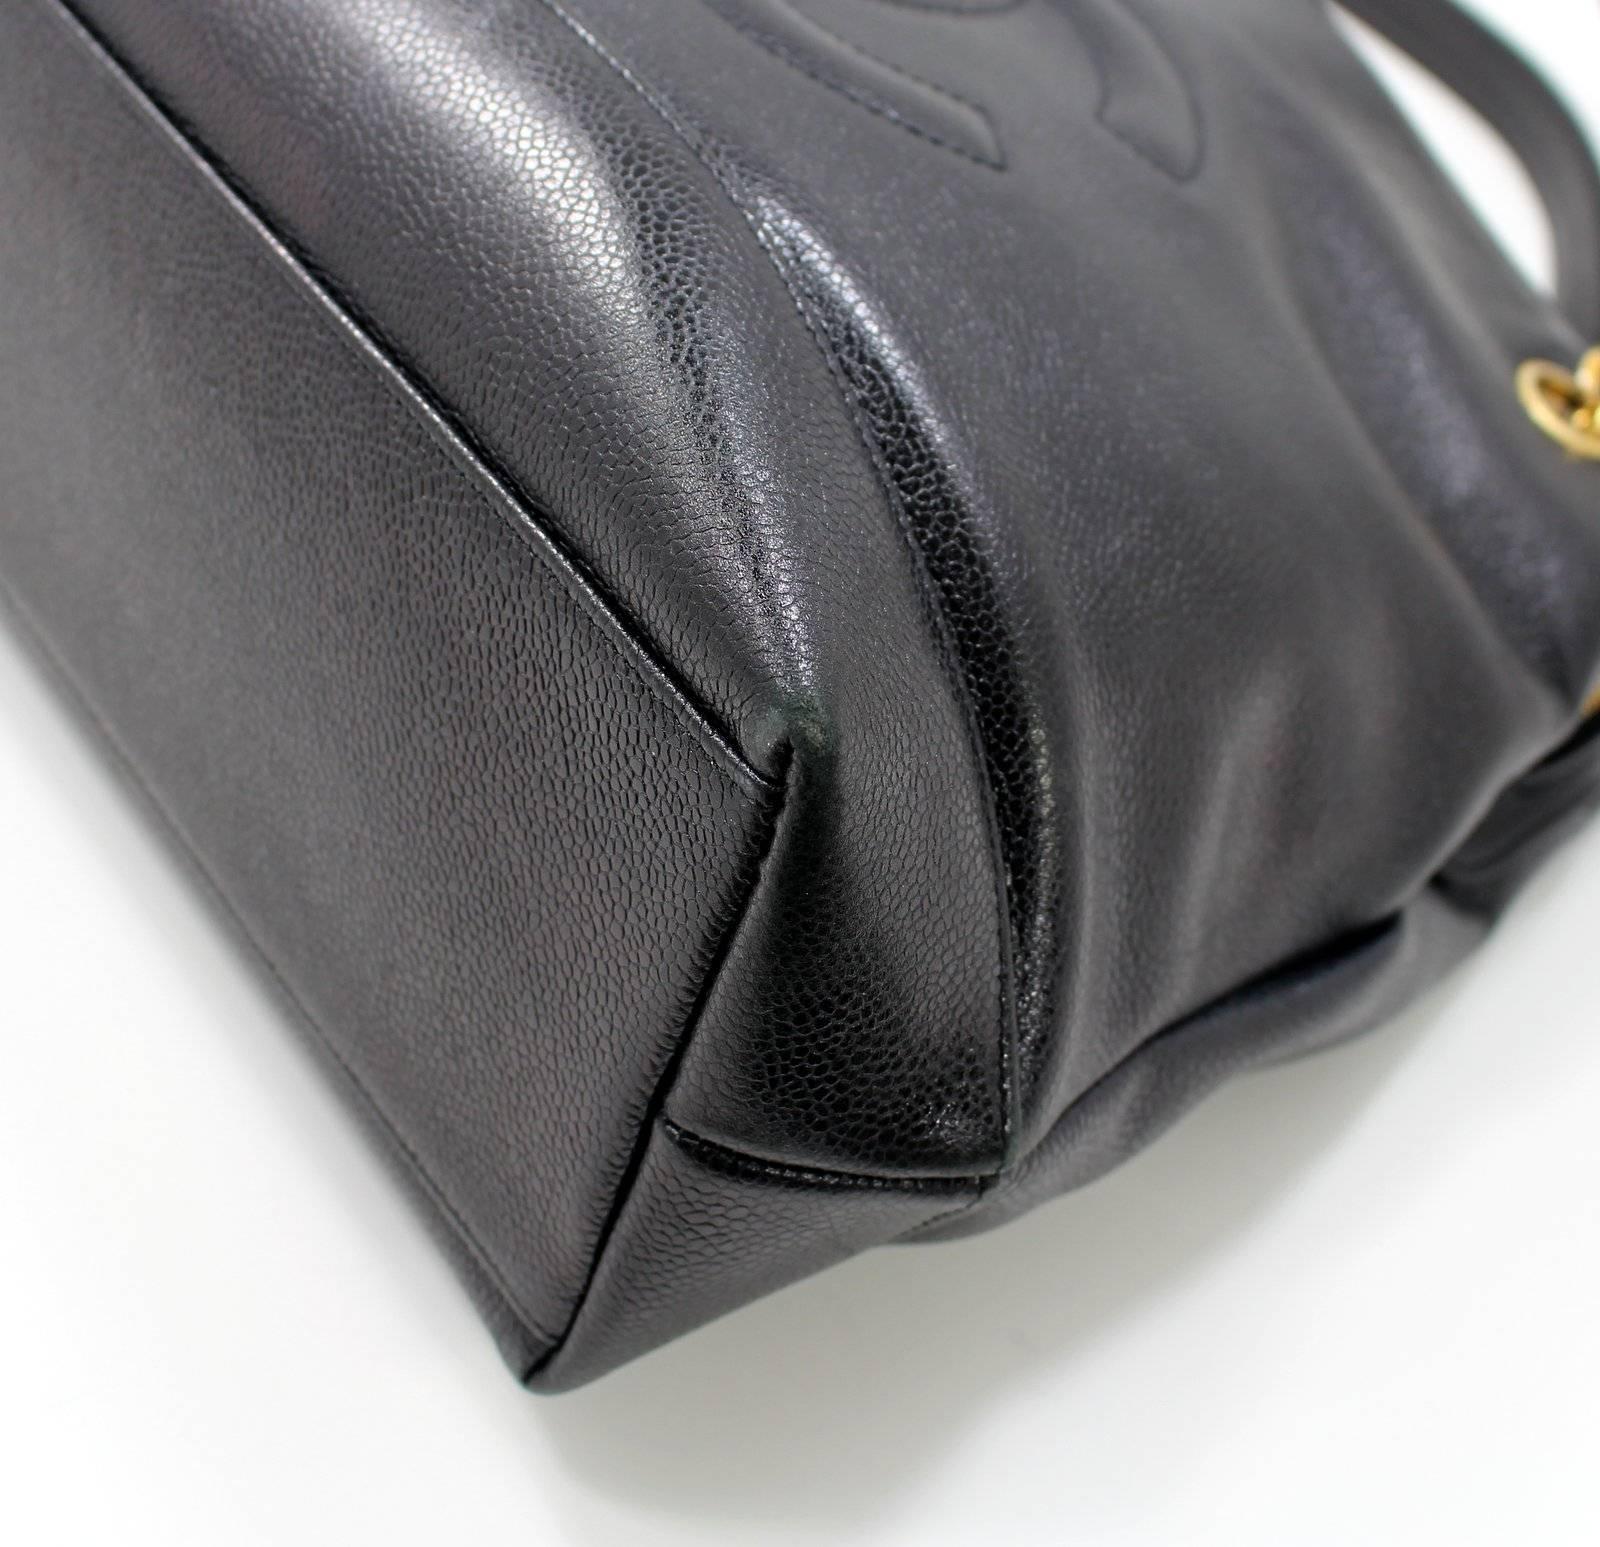 Chanel Black Caviar Leather Shoulder Bag- Large, GHW 2